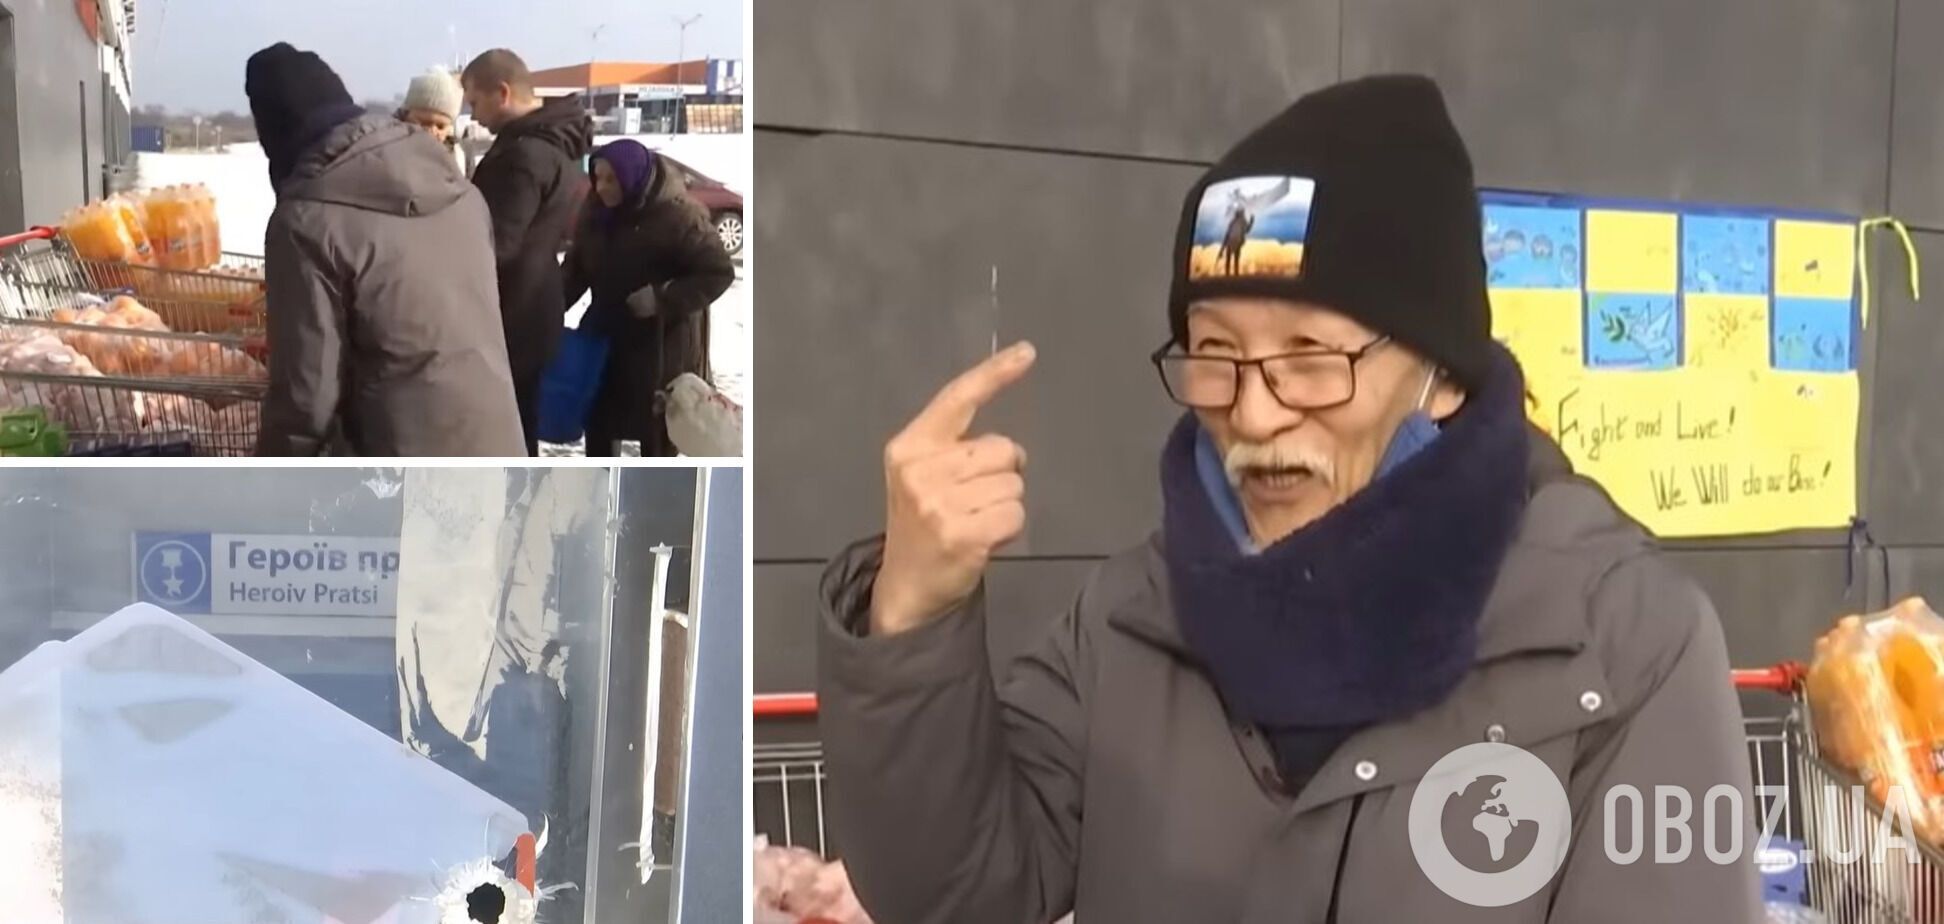 "Харьков – это круто": 75-летний японец девять месяцев прожил в харьковском метро и решил навсегда остаться в Украине. Видео